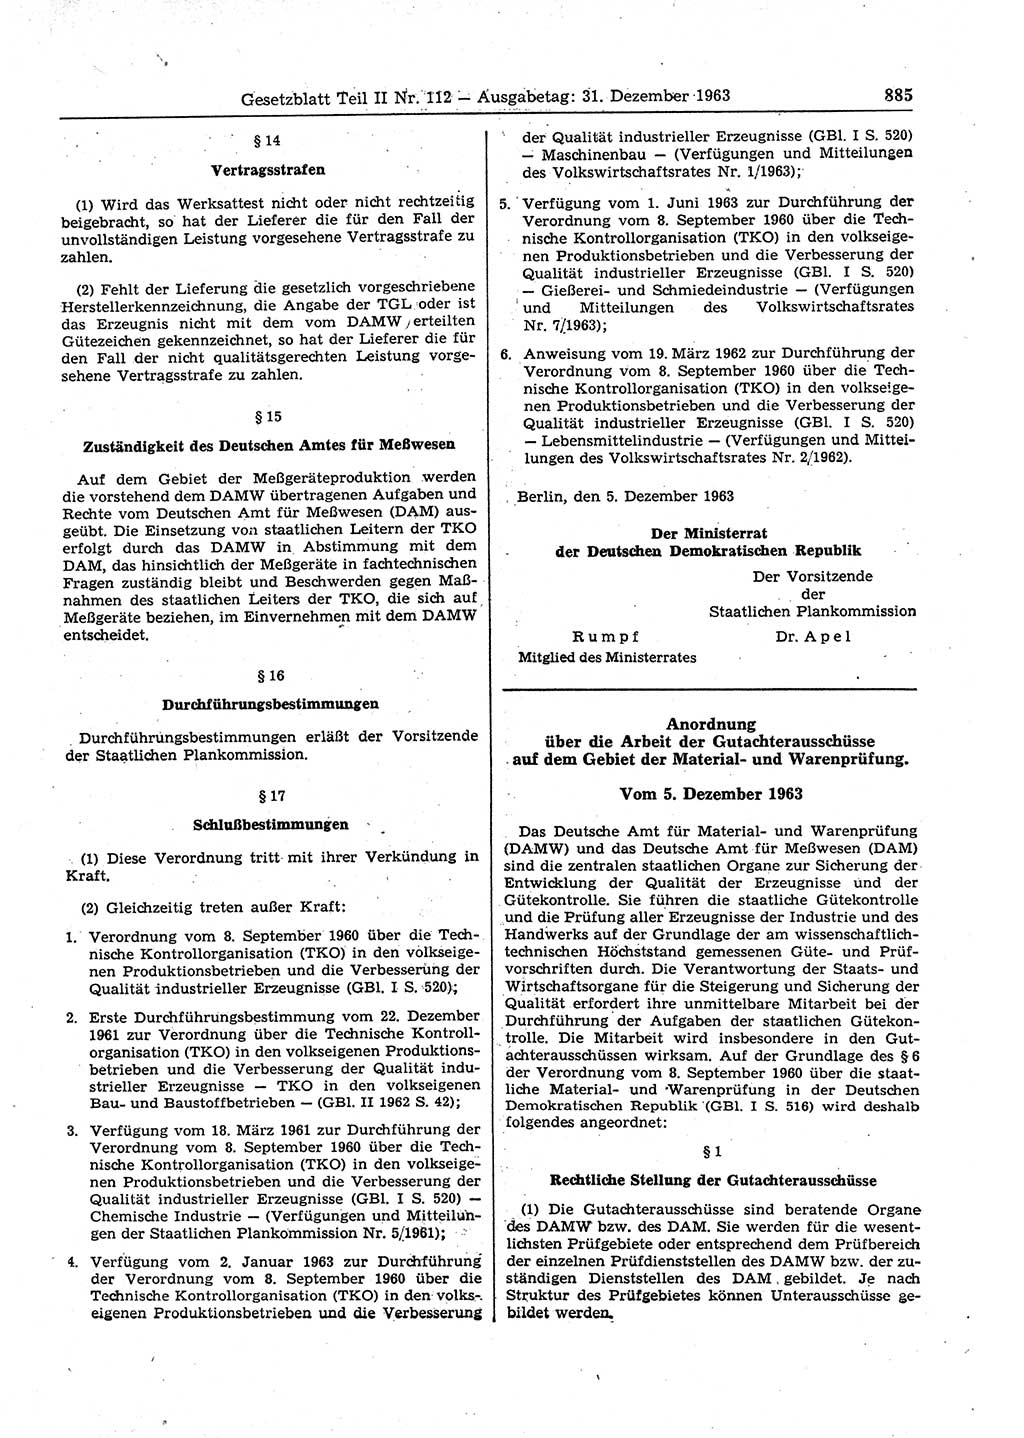 Gesetzblatt (GBl.) der Deutschen Demokratischen Republik (DDR) Teil ⅠⅠ 1963, Seite 885 (GBl. DDR ⅠⅠ 1963, S. 885)